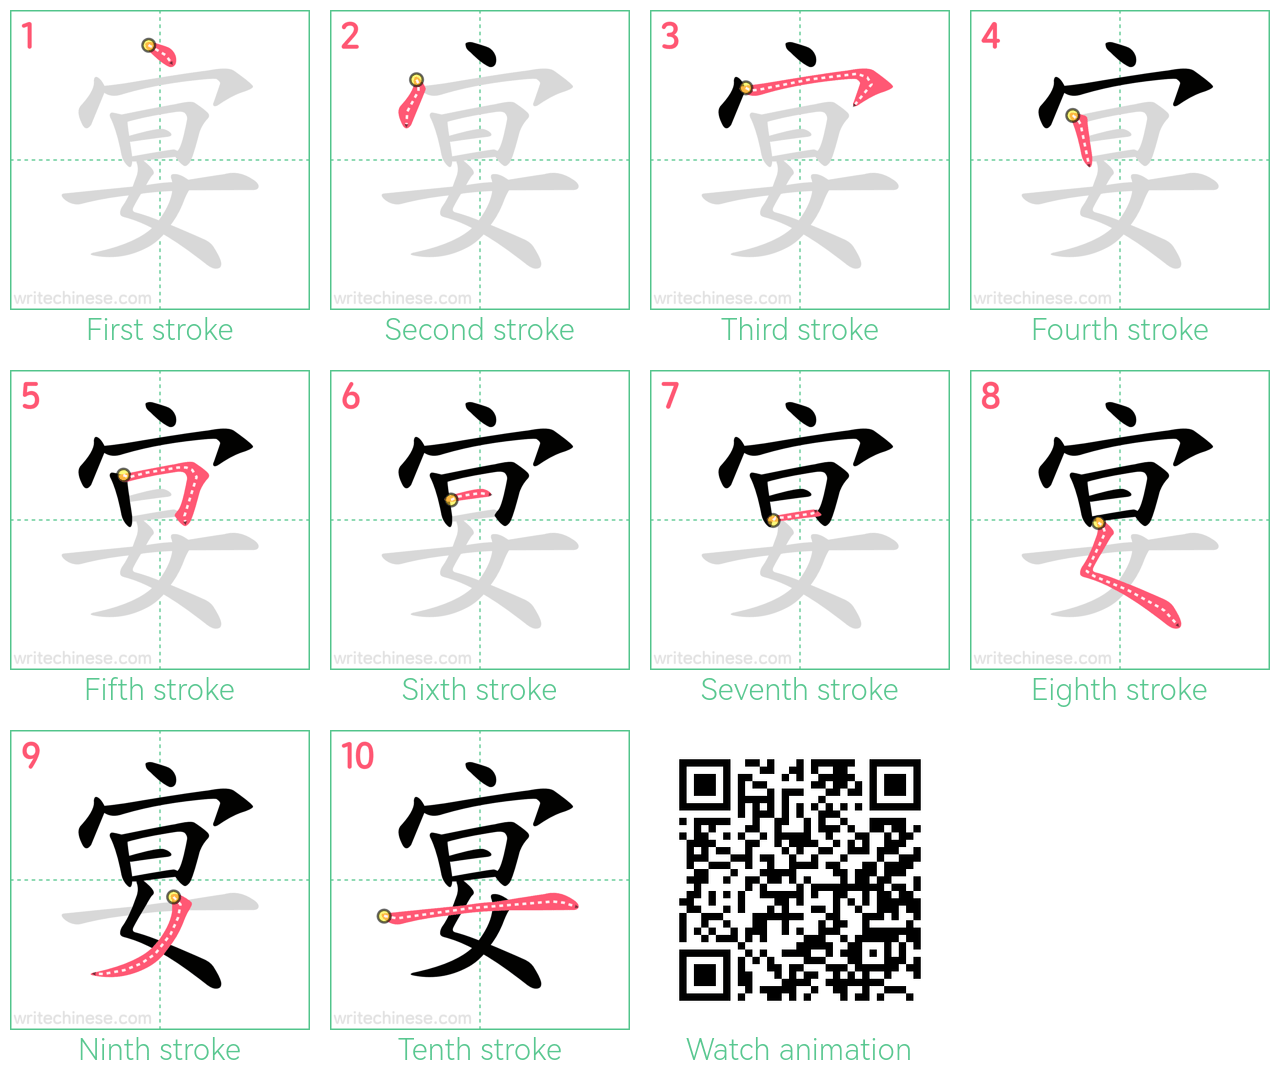 宴 step-by-step stroke order diagrams